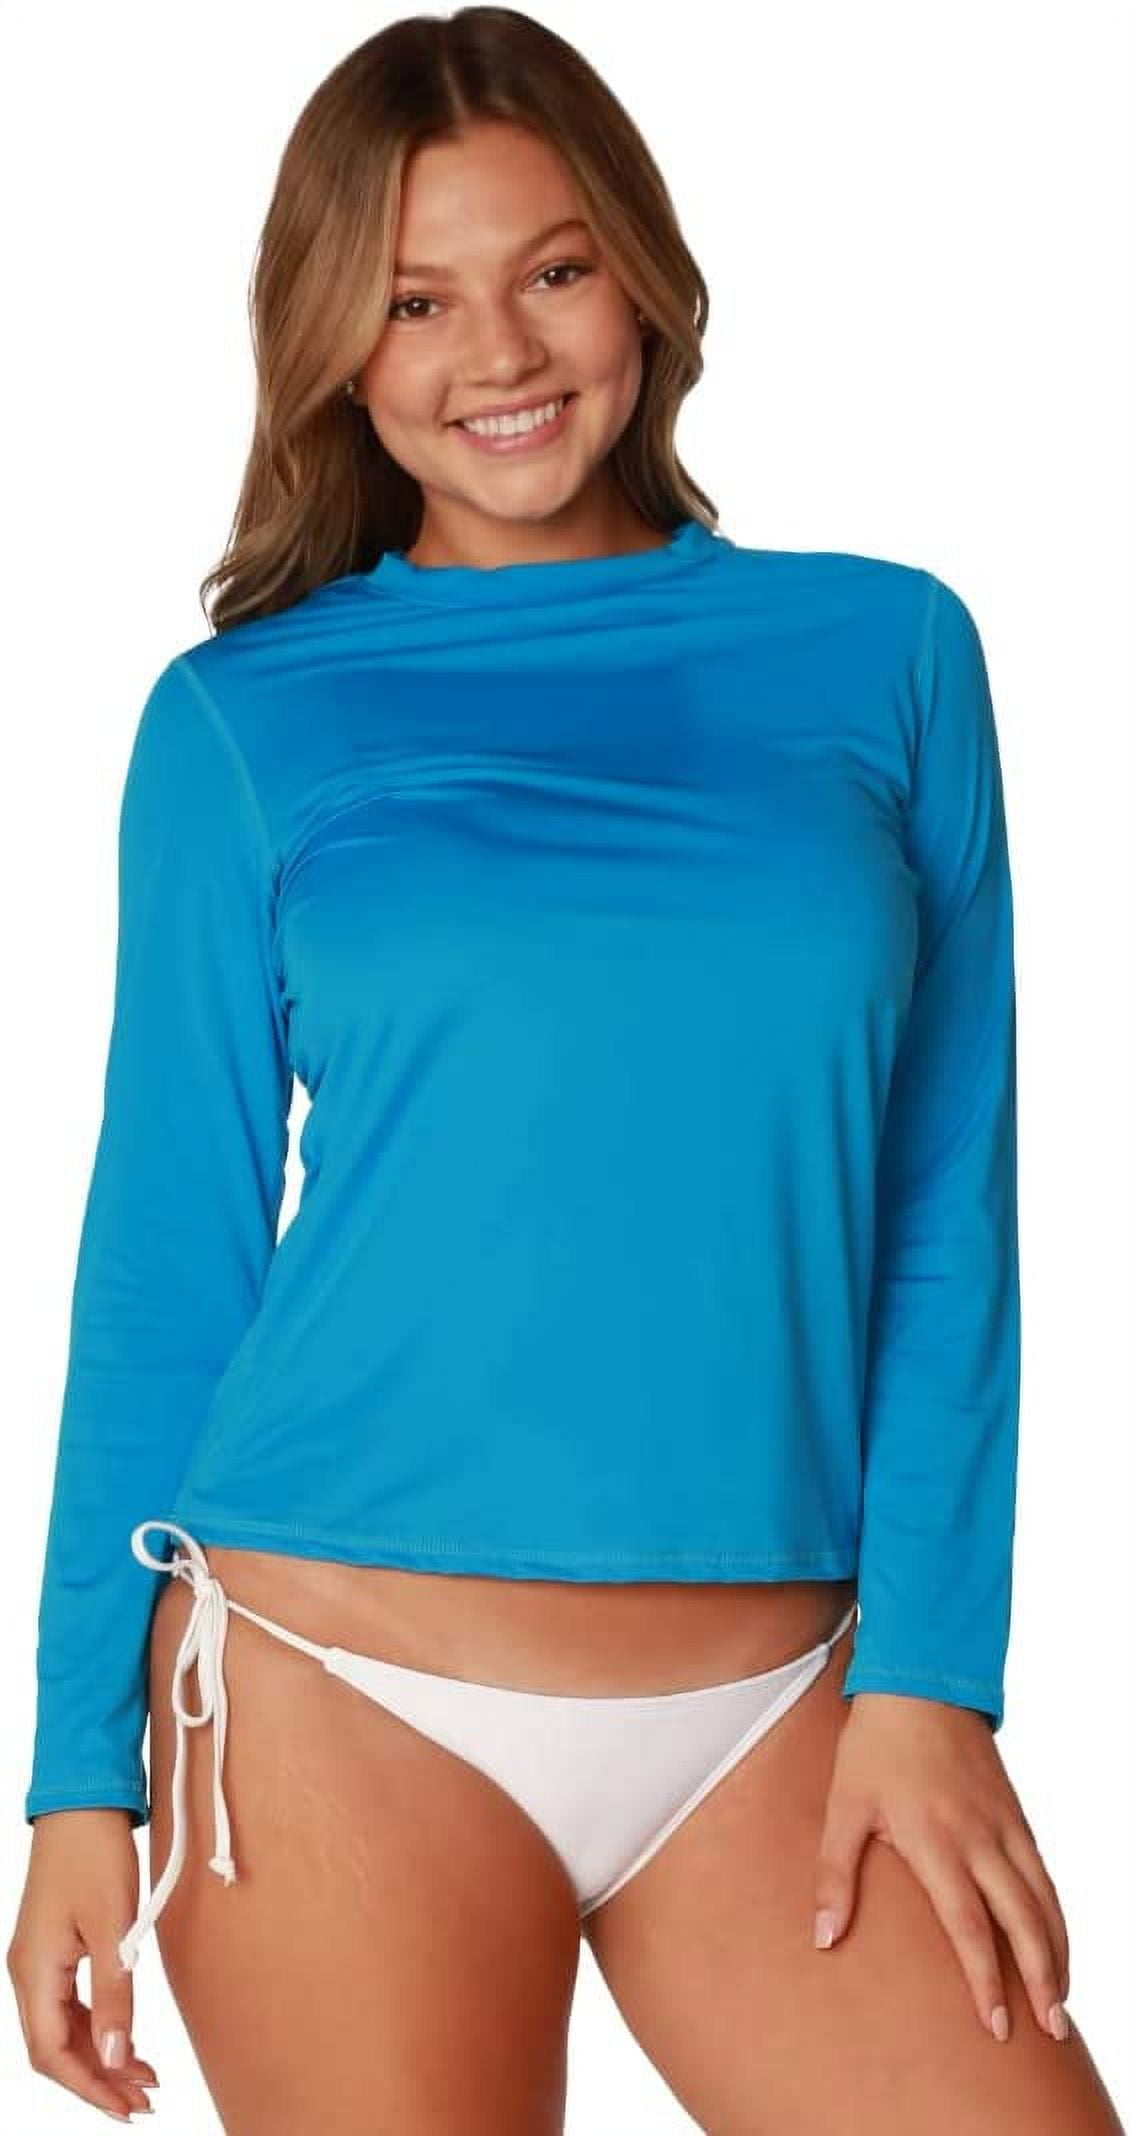 InGear UV Protection Clothing swimsuit women, Fishing shirts